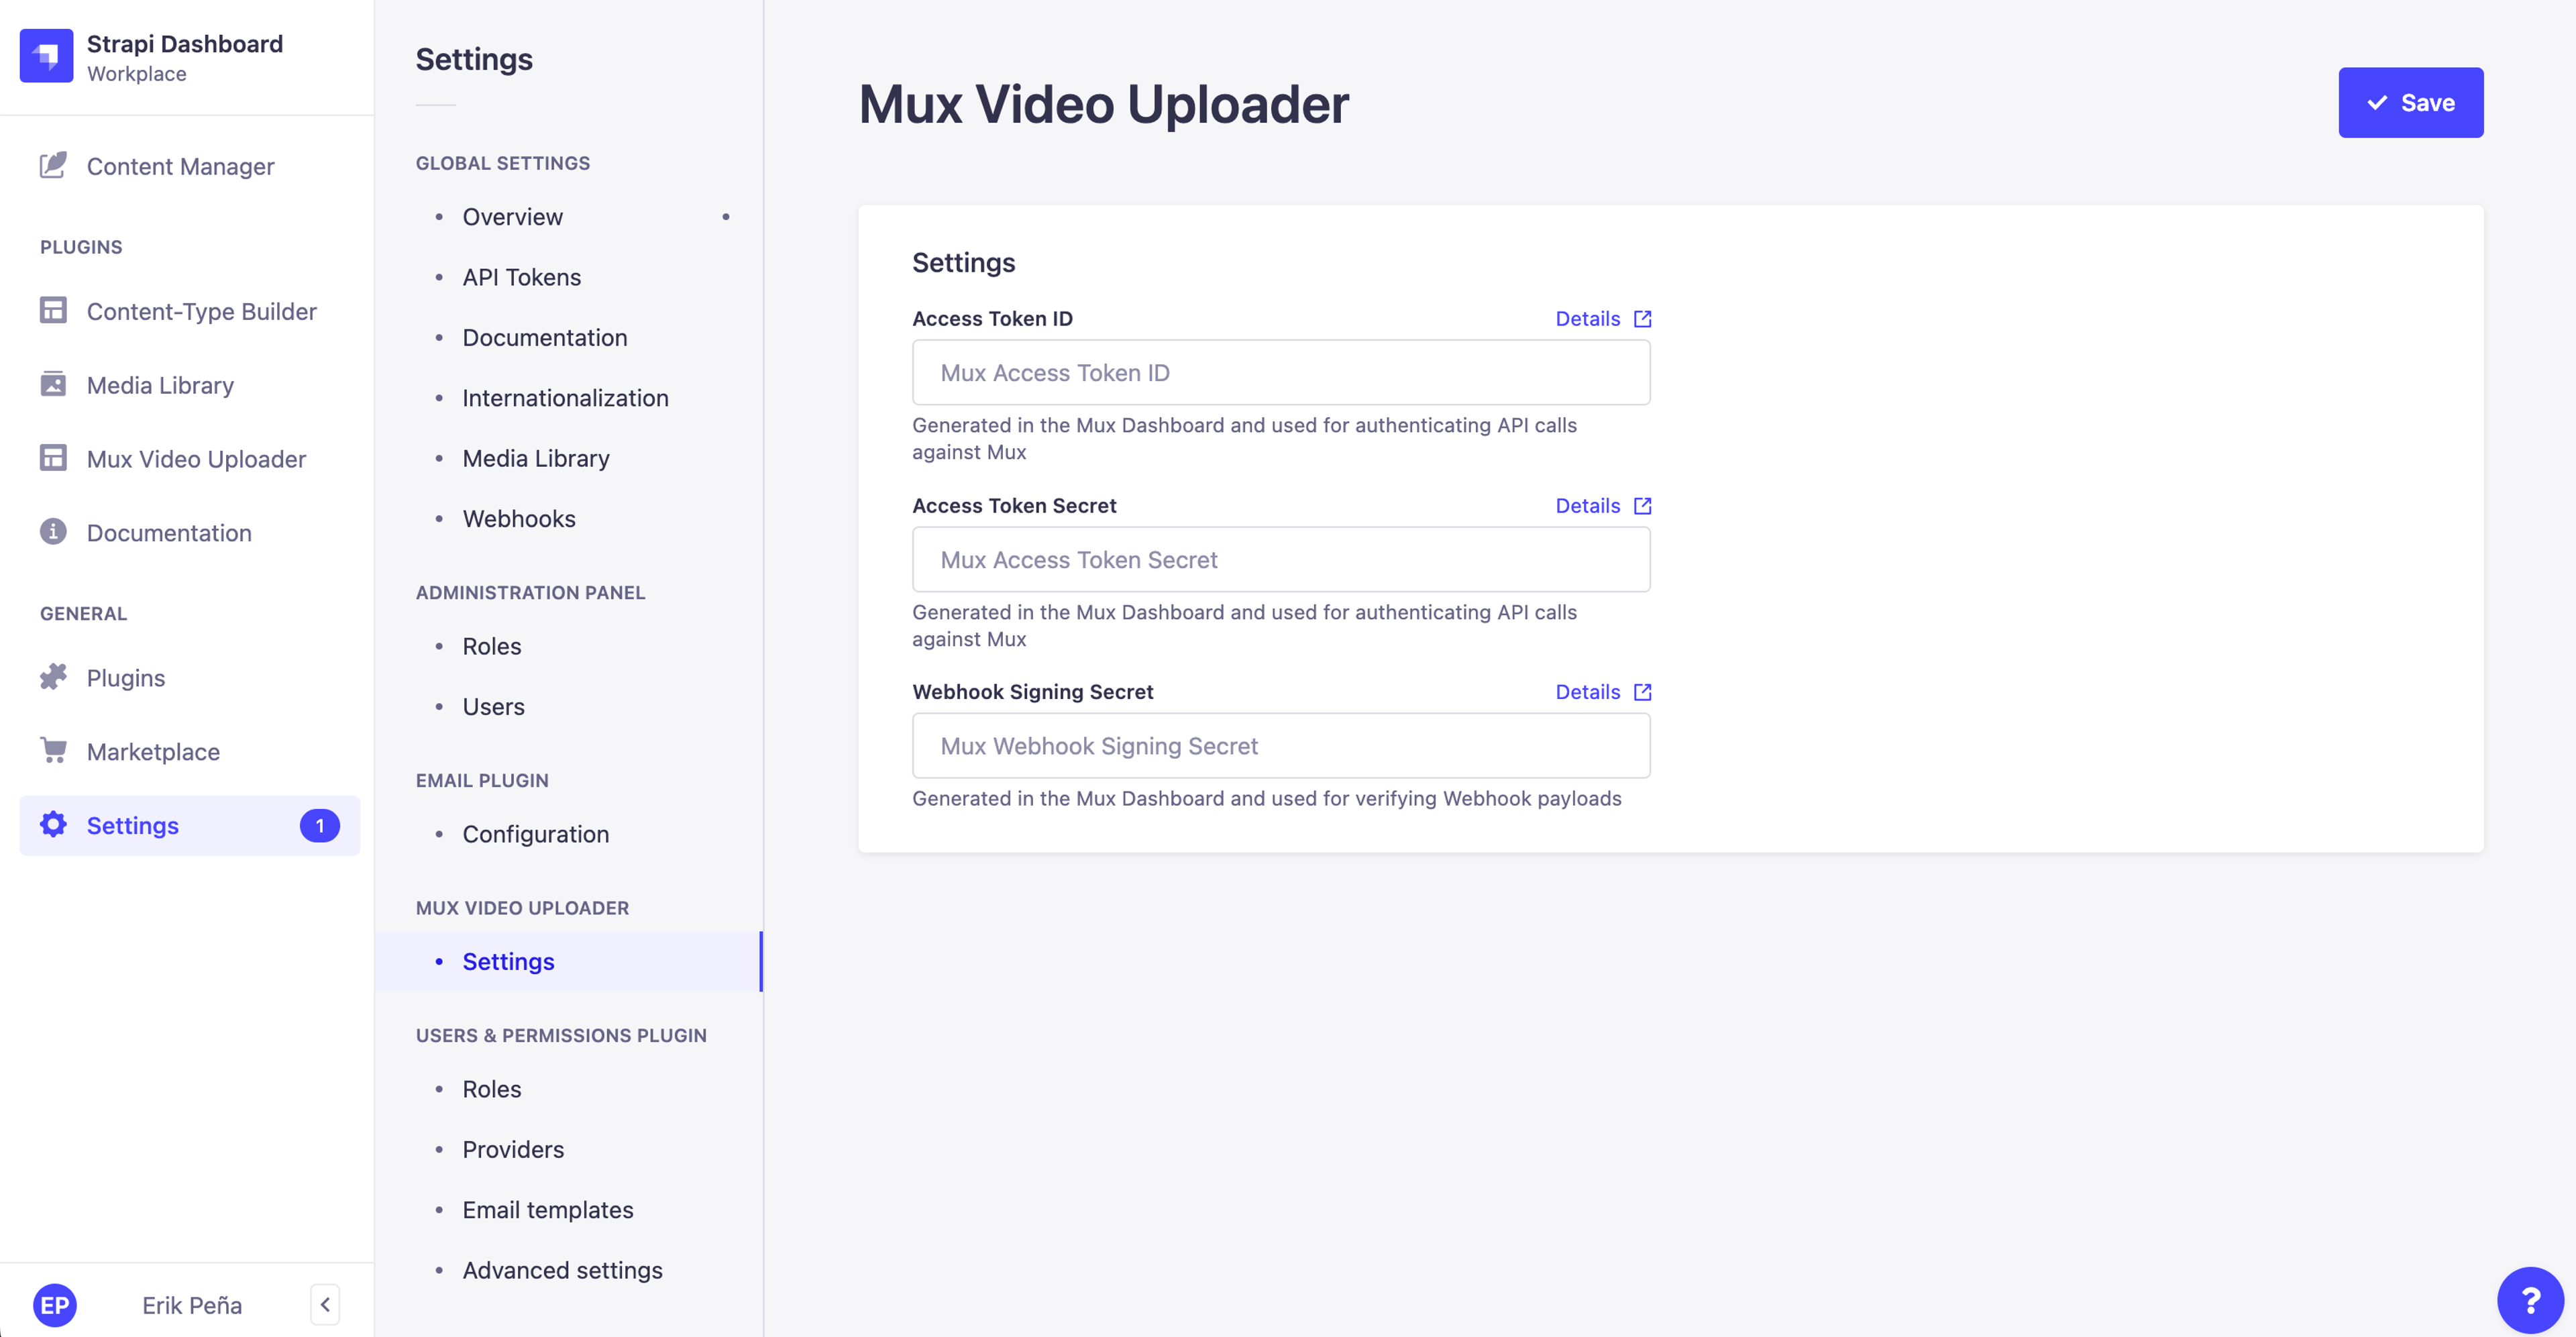 Mux Video Uploader - Settings